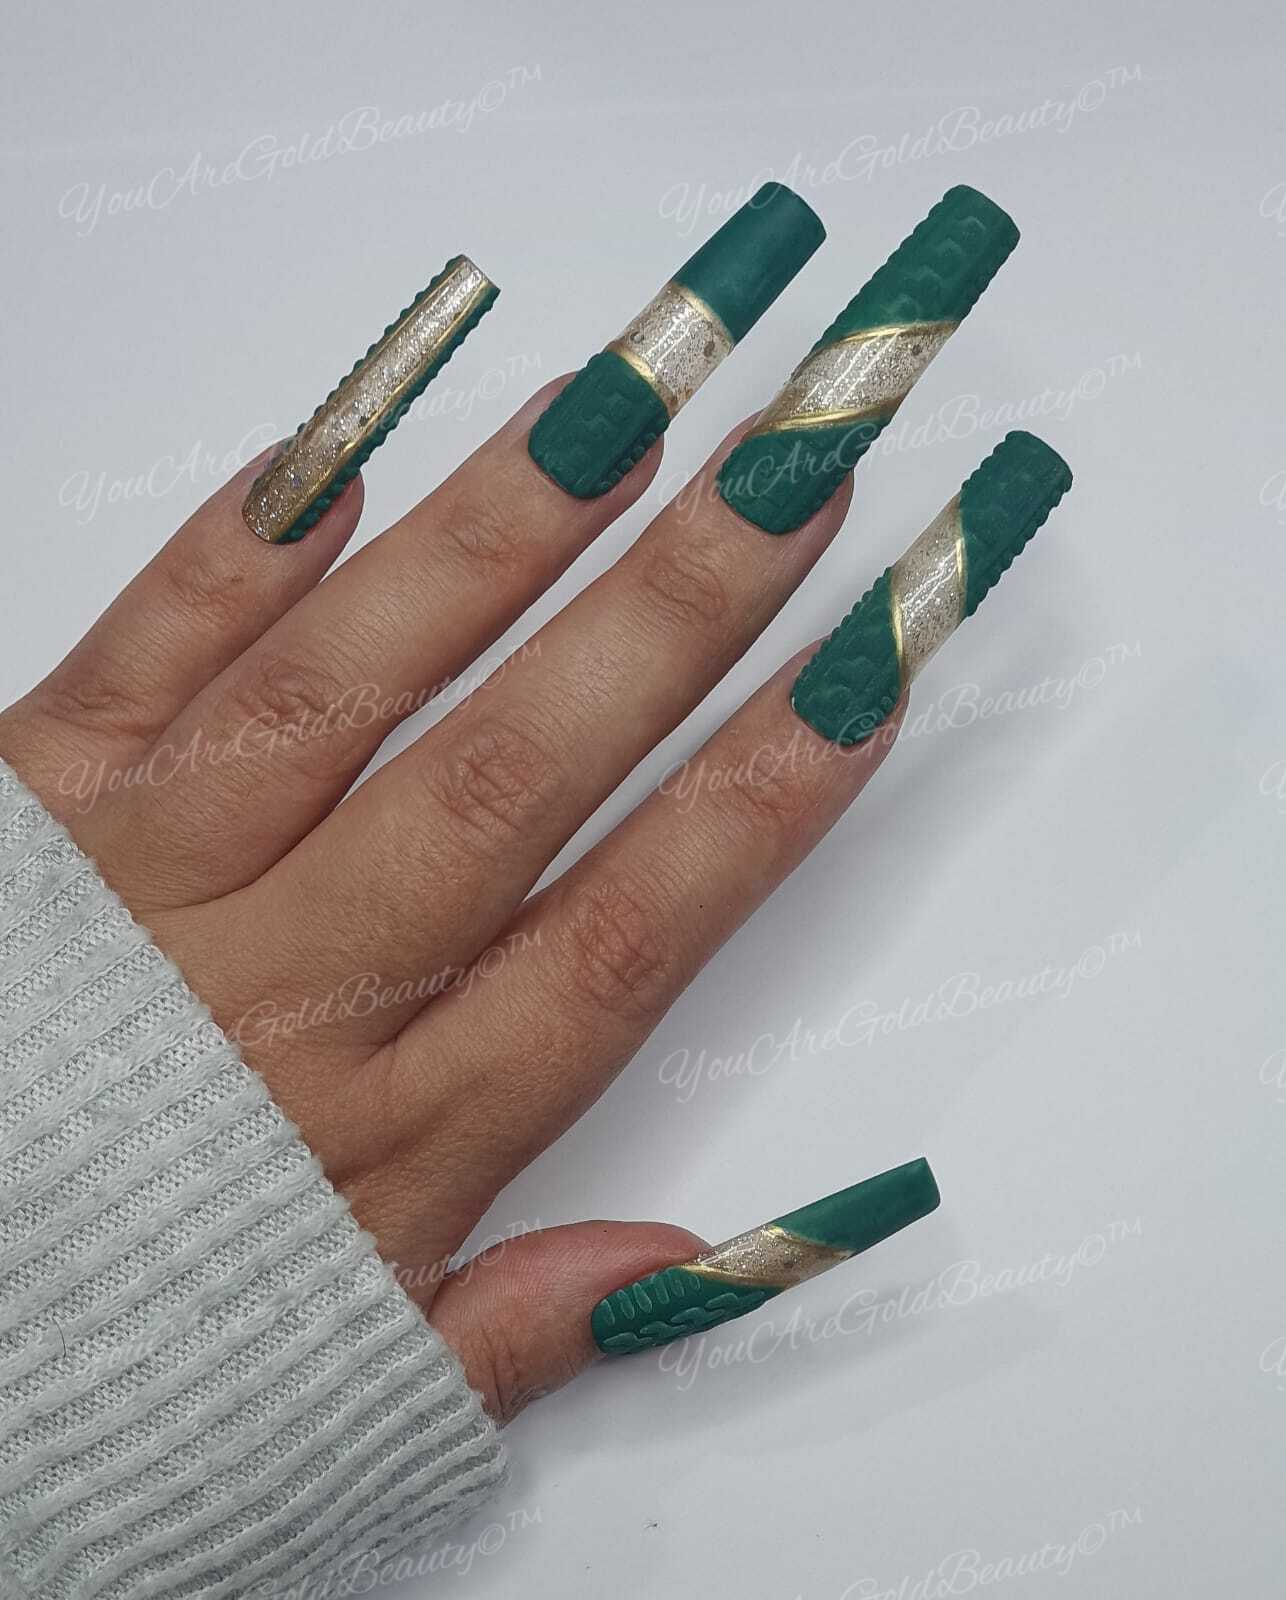 Green Sweater nails design Gold Glitter nails Gold chrome nails vo.tino nails